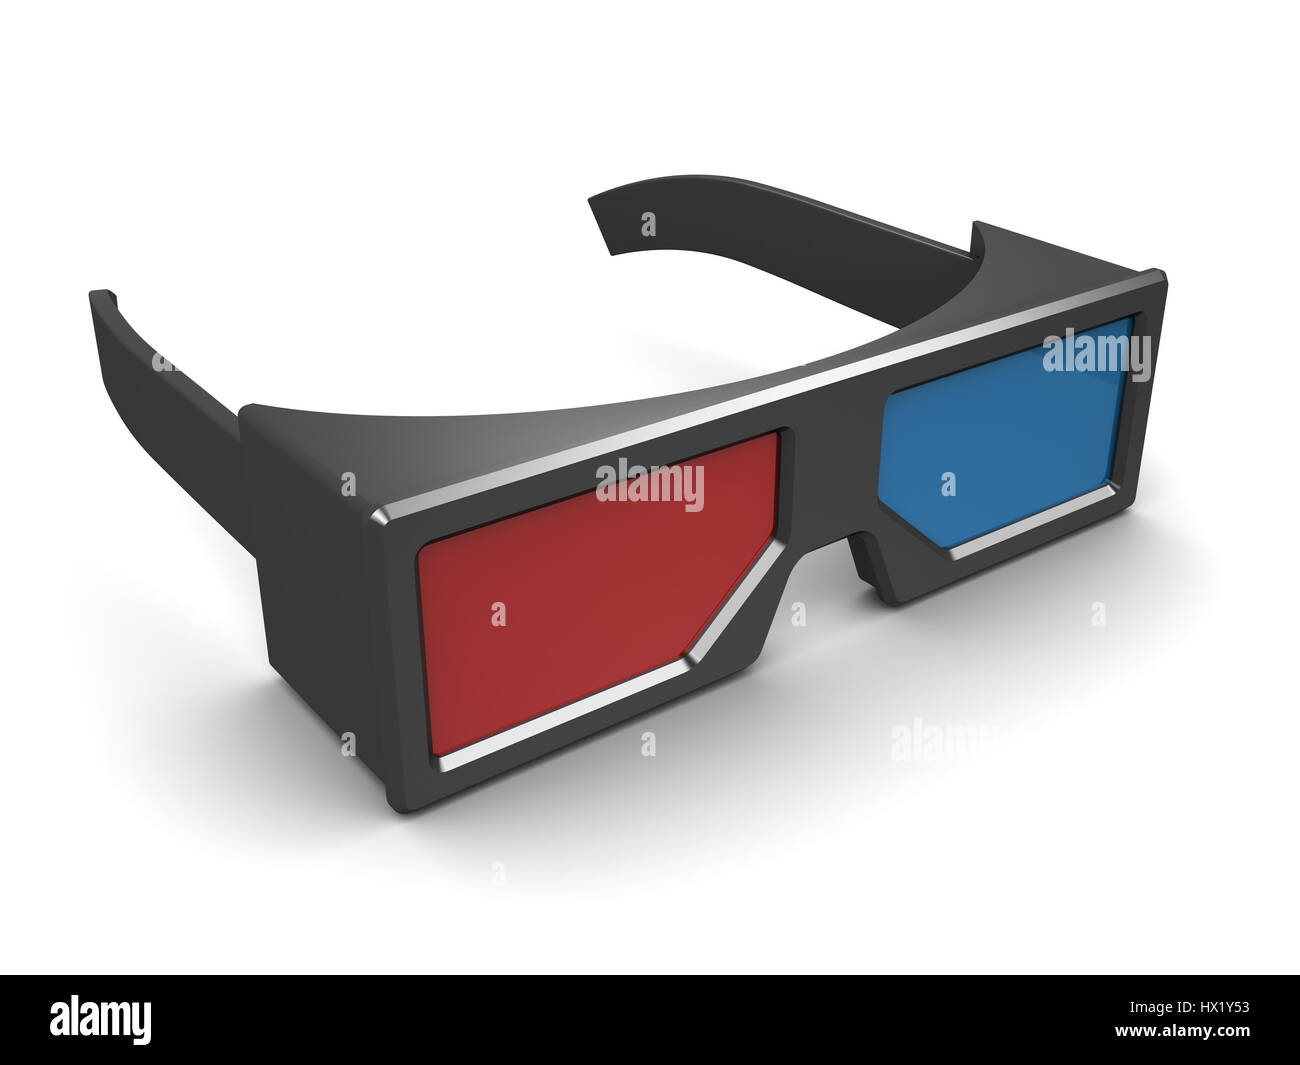 Estadístico Ligadura Inaccesible Ilustración 3d de gafas anaglíficas sobre fondo blanco Fotografía de stock  - Alamy